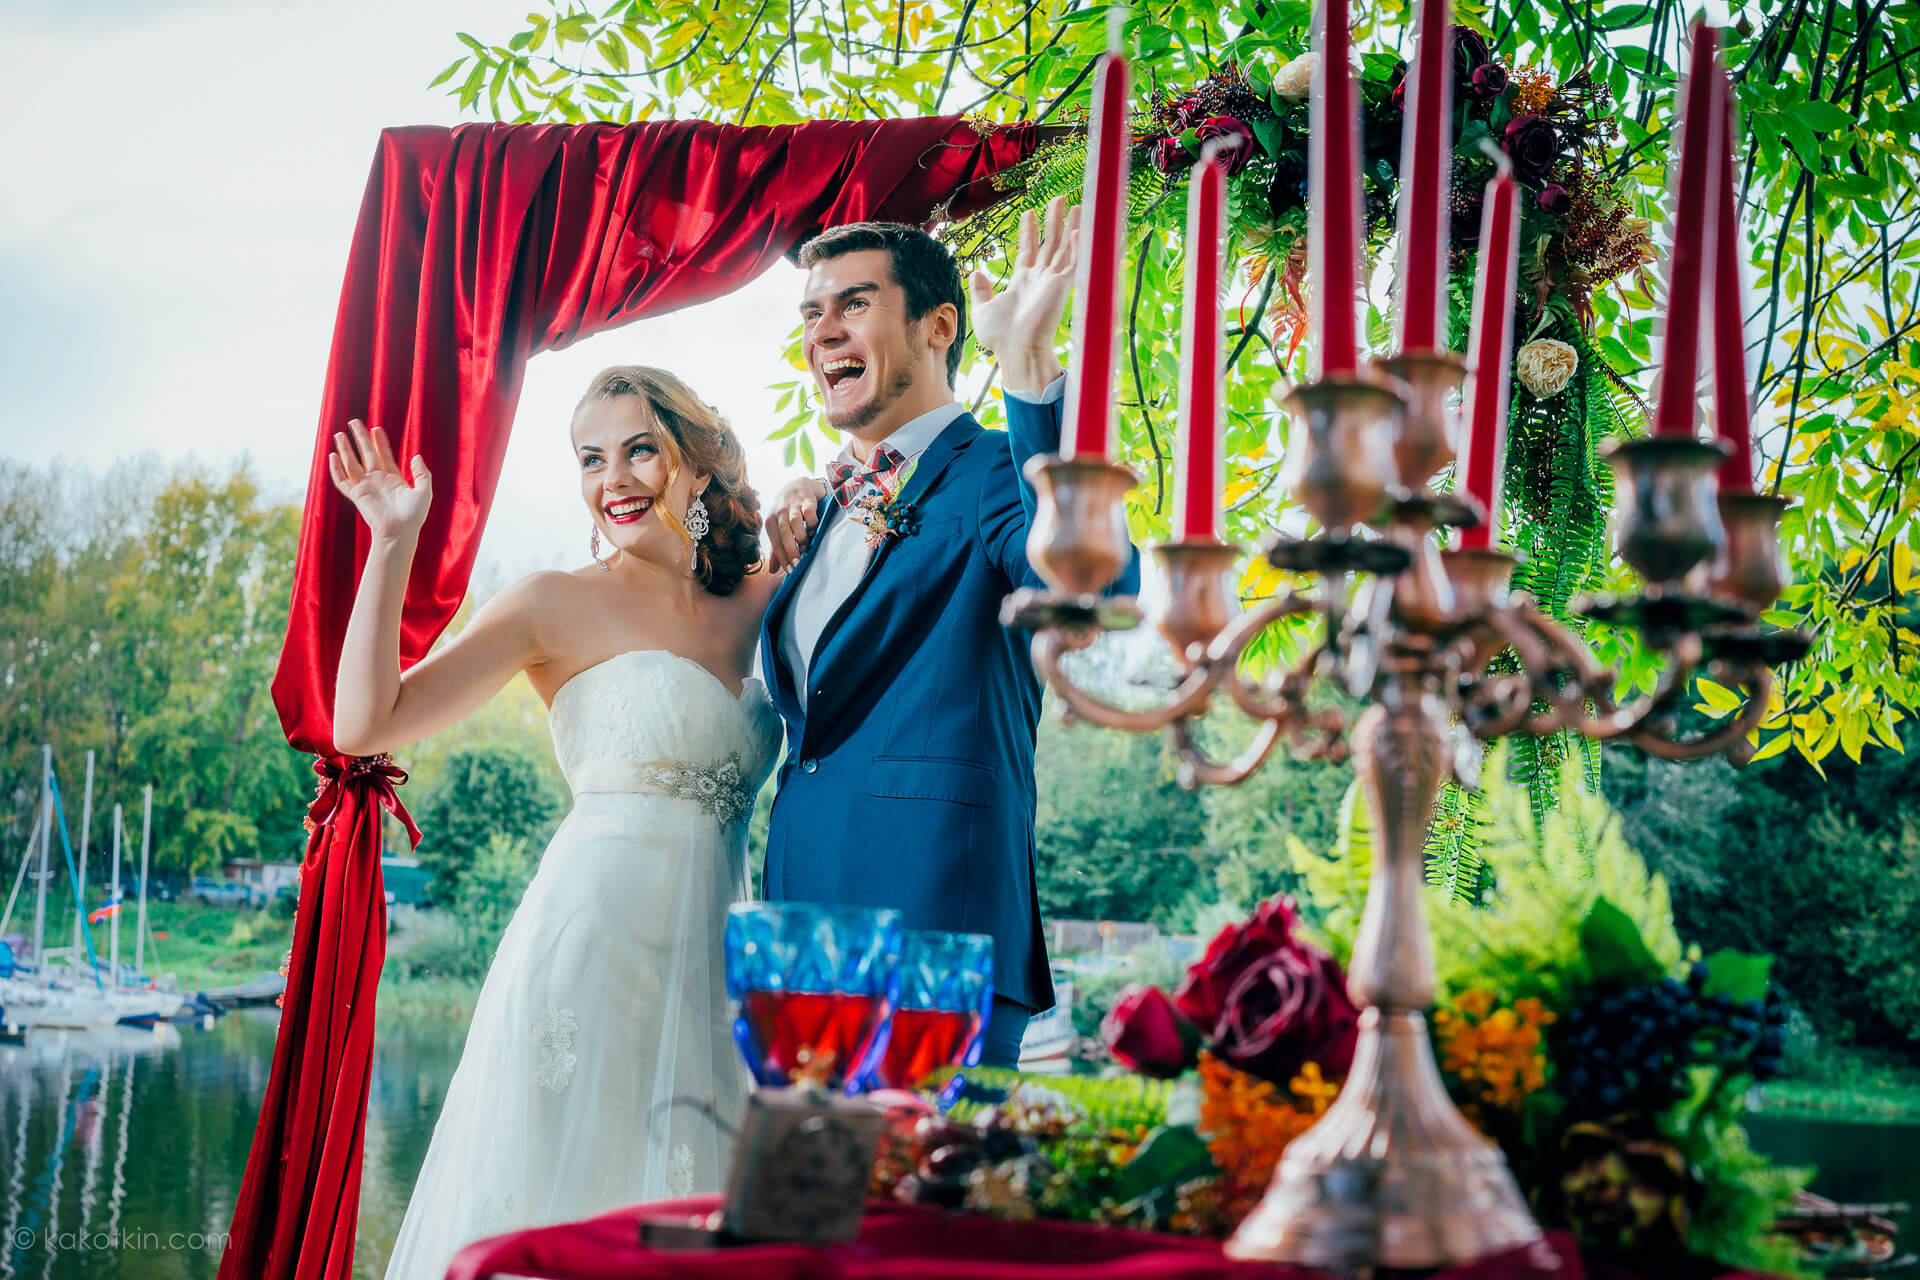 Съемка свадьбы в Москве, красивая невеста, декорации фотографии